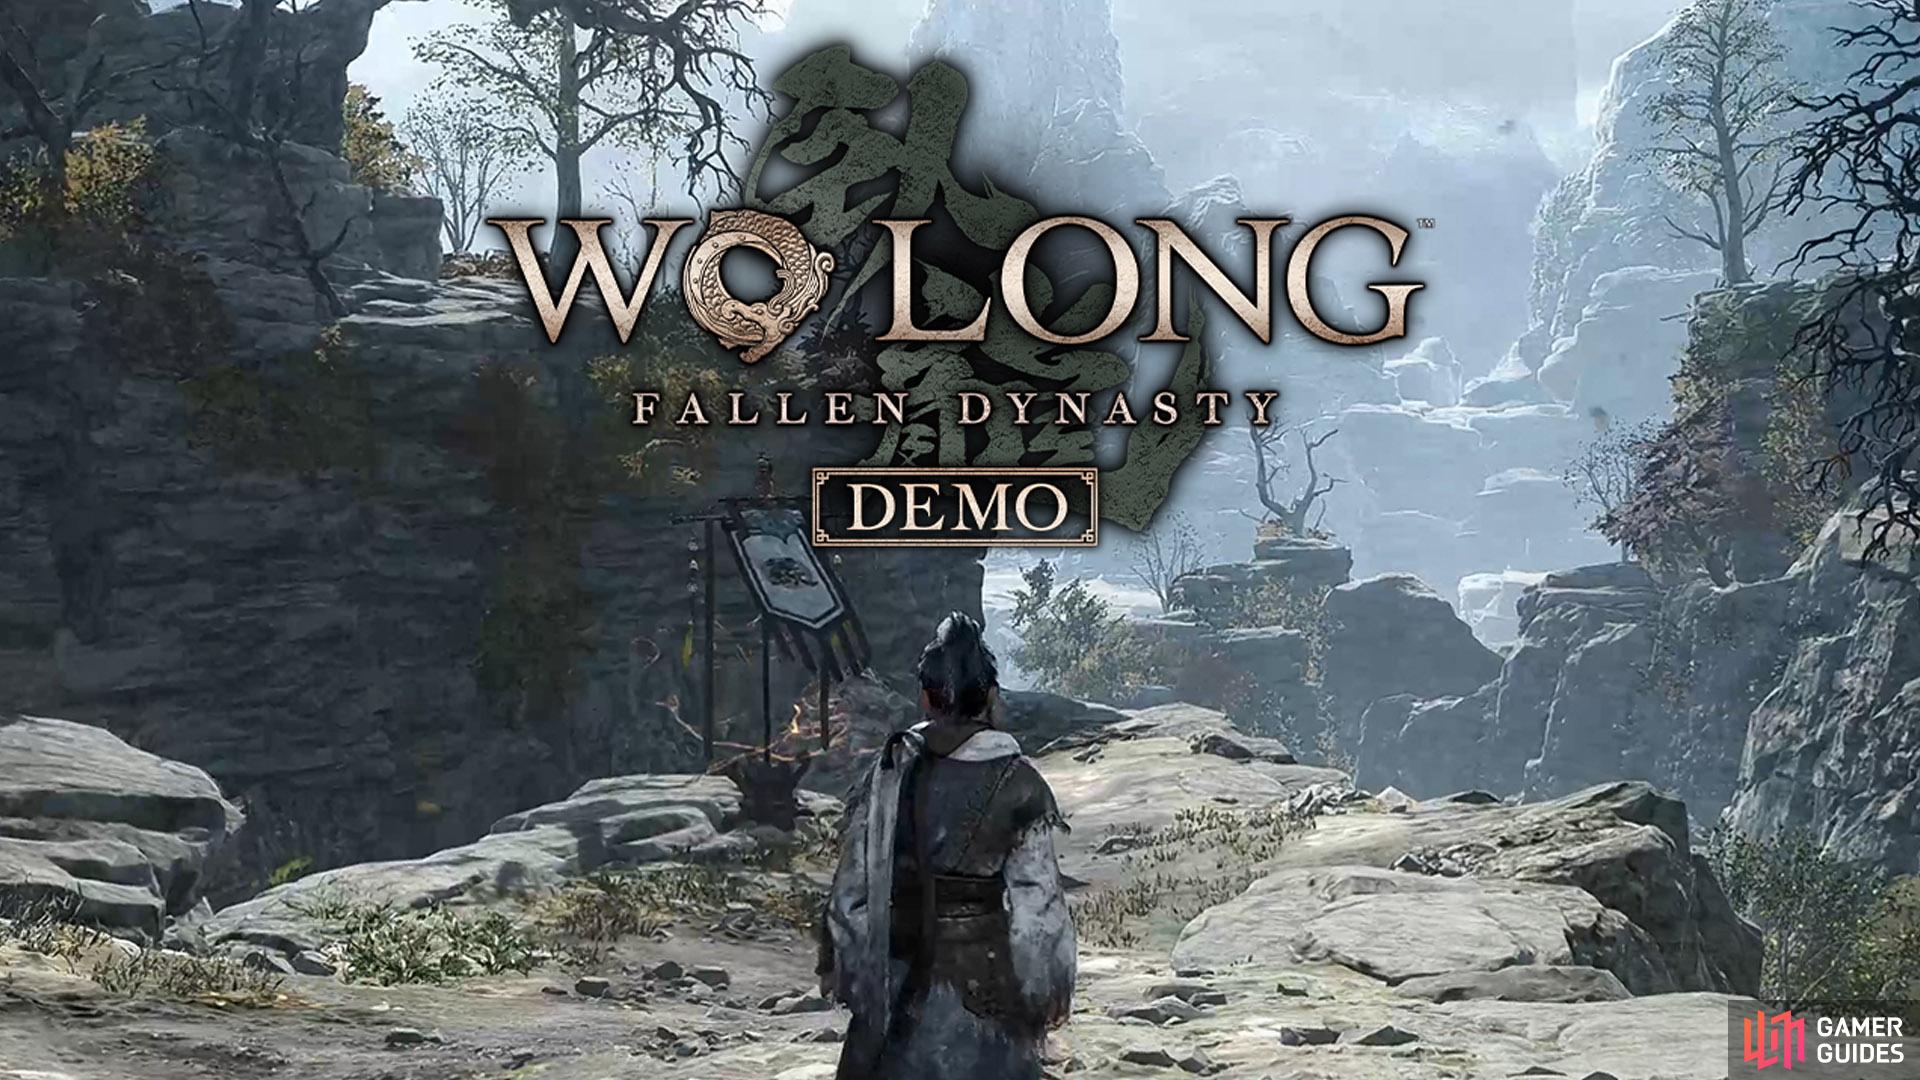 Wo Long: Fallen Dynasty Demo artwork